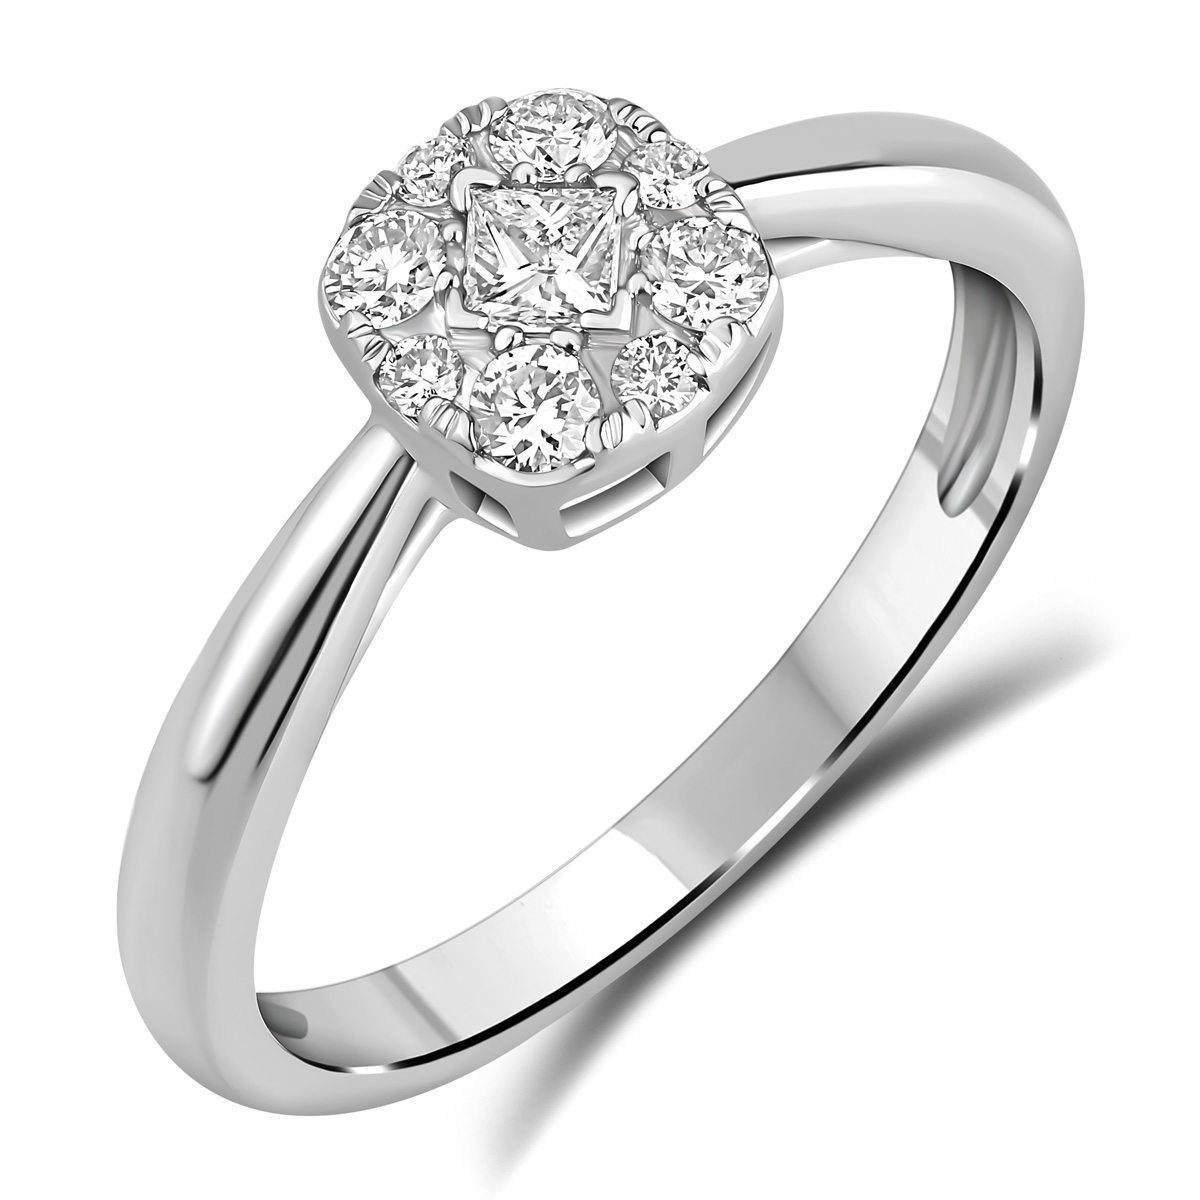 HE53118QWD4WN
14K White Gold princess cut diamond ring